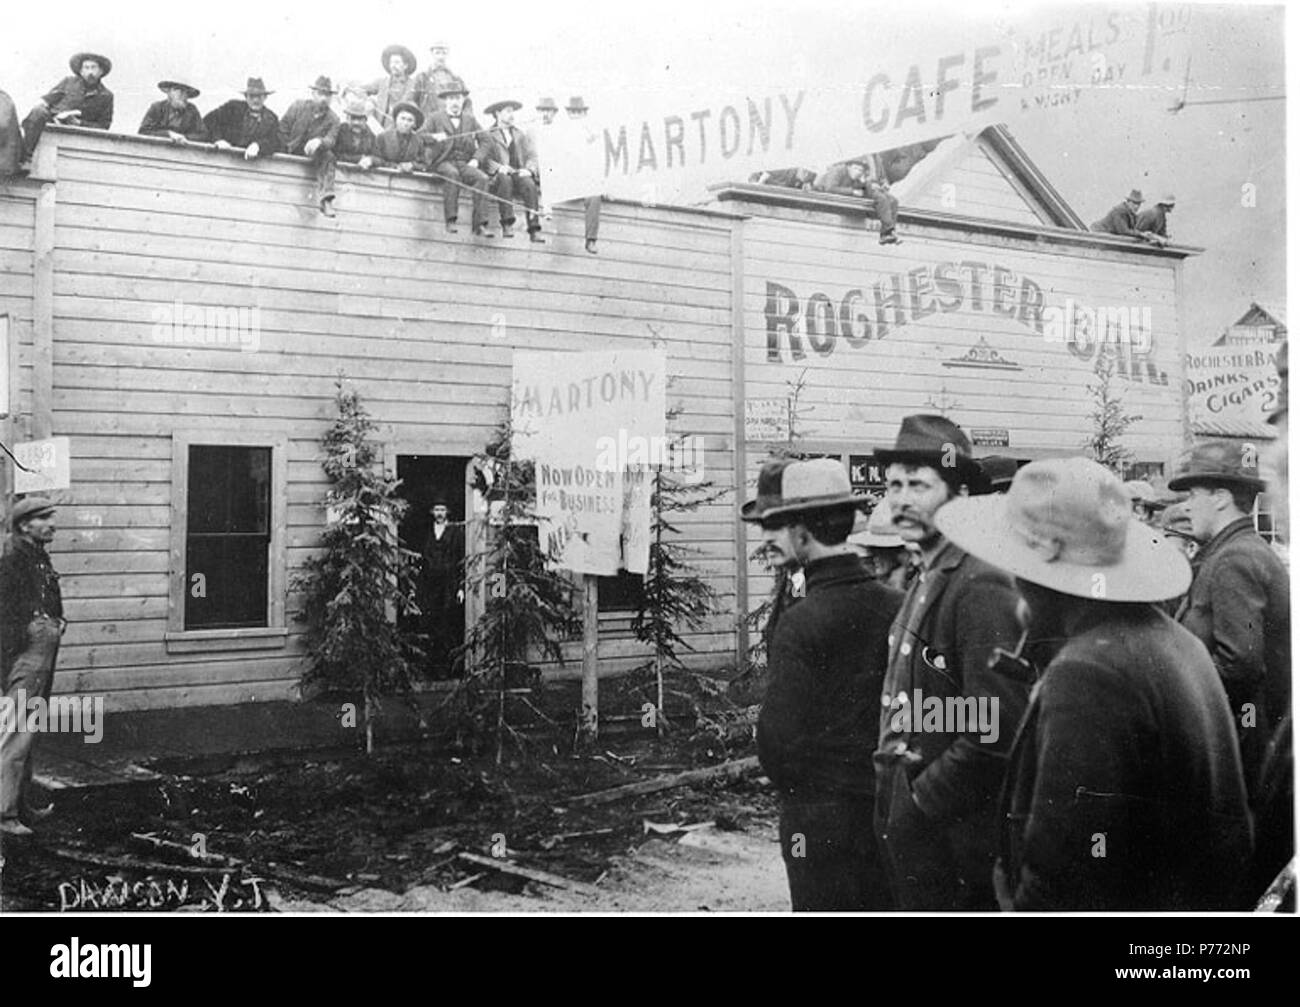 3 Masse für die Eröffnung des Martony Café, Dawson City, Yukon Territory versammelt, ca 1899 (HEGG 221) Stockfoto